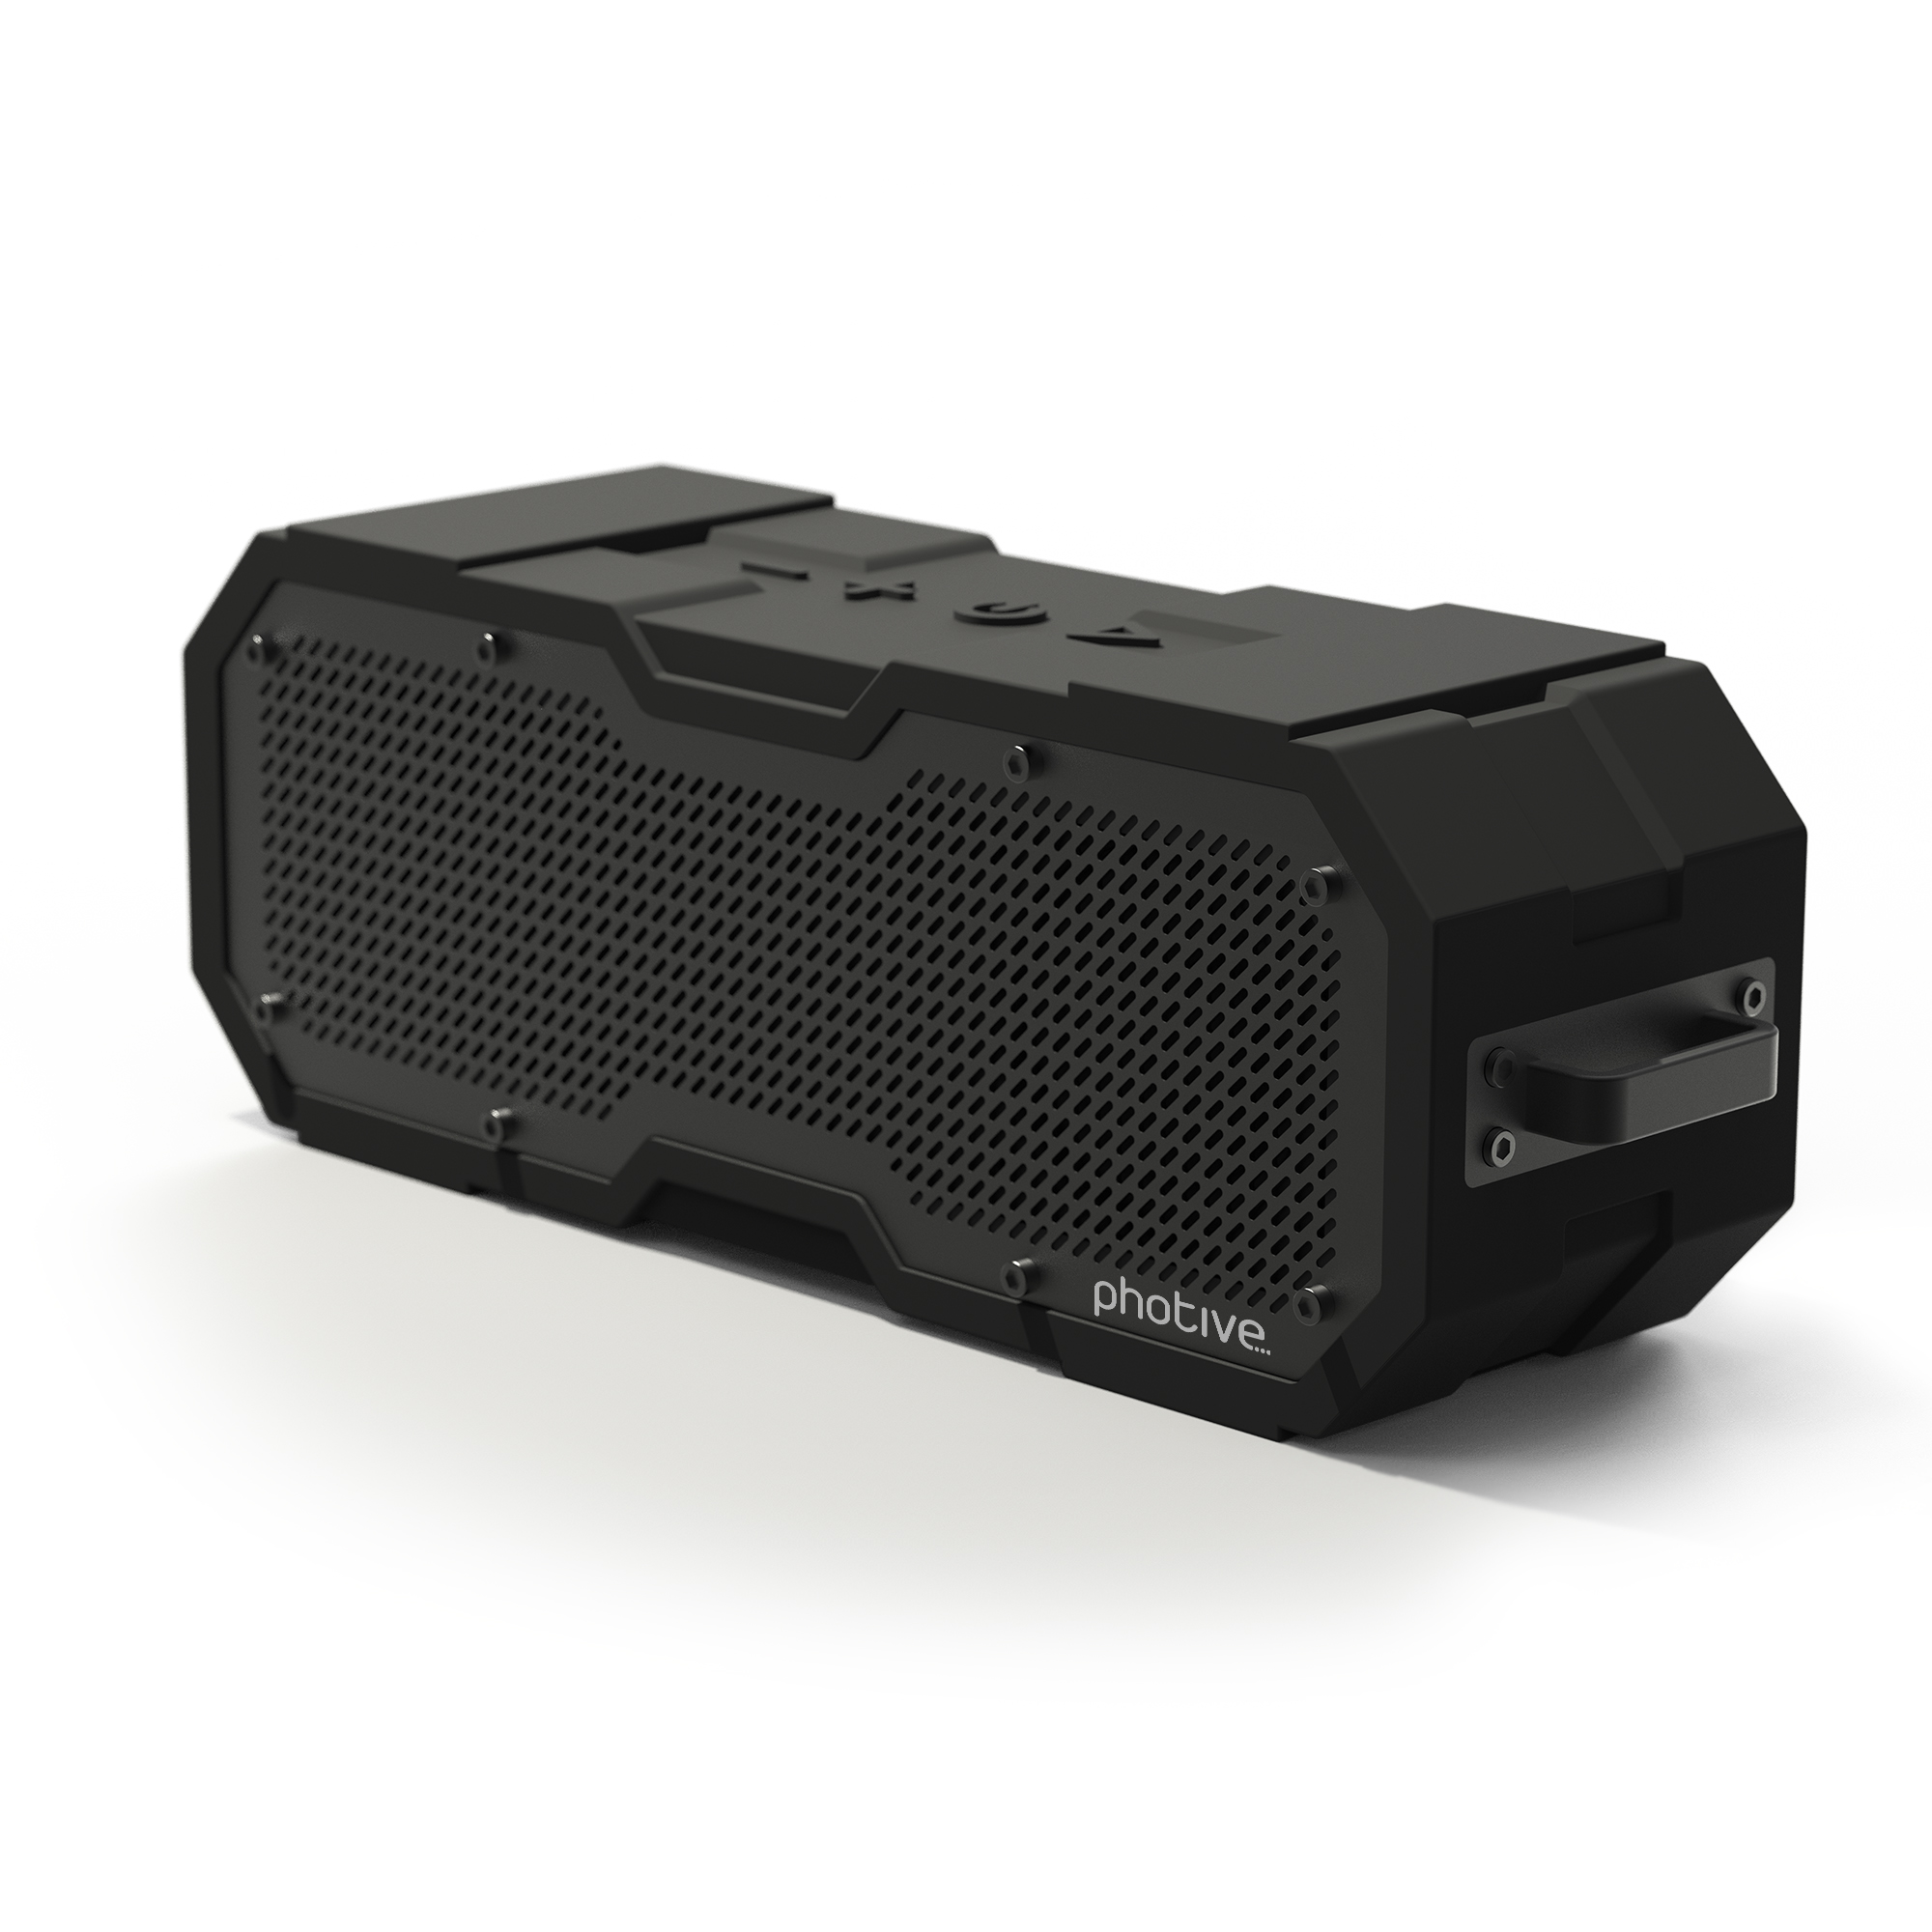 Photive CYREN II portable waterproof Bluetooth speaker for $30